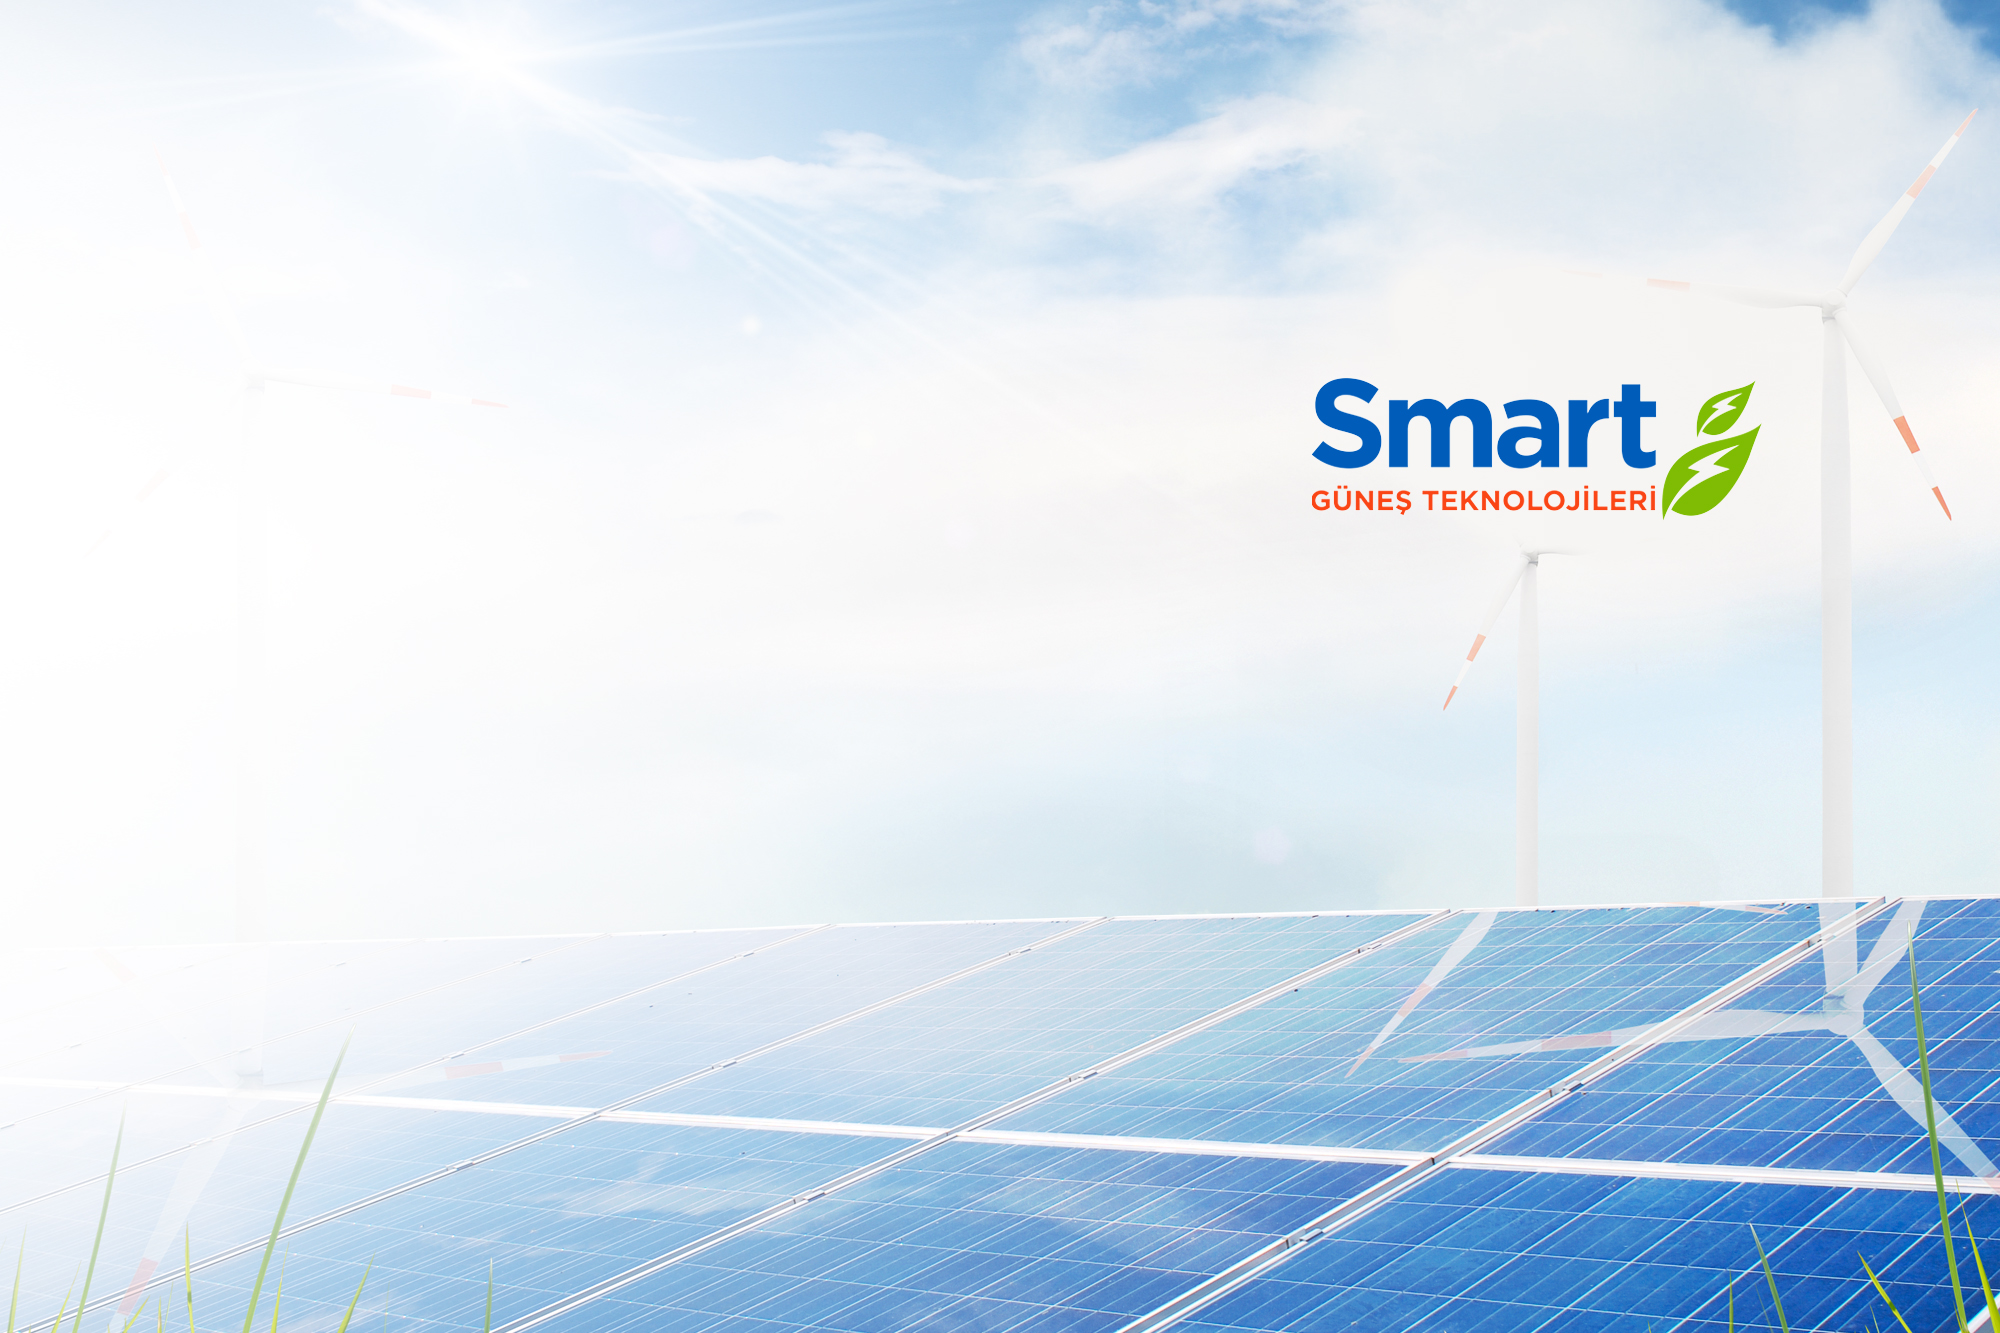 Smart Güneş Teknolojileri elektrik tüketiminden kaynaklanan karbon ayak izini sıfırladı